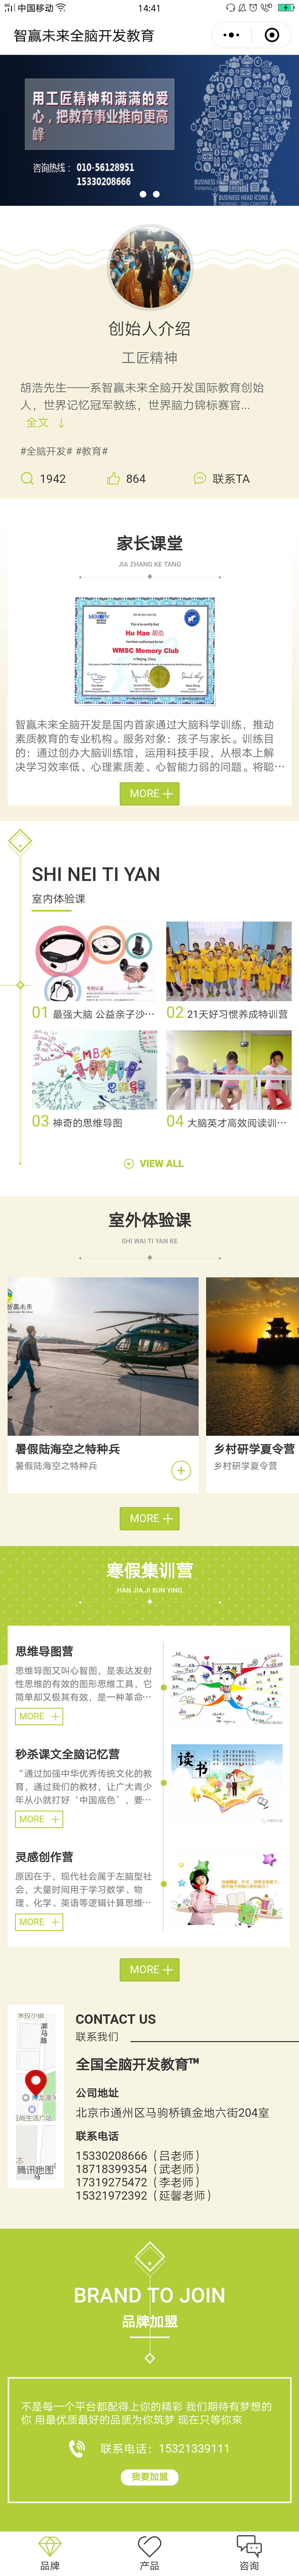 教育绿色北京-智赢未来全脑开发教育商标小程序高级版.jpg